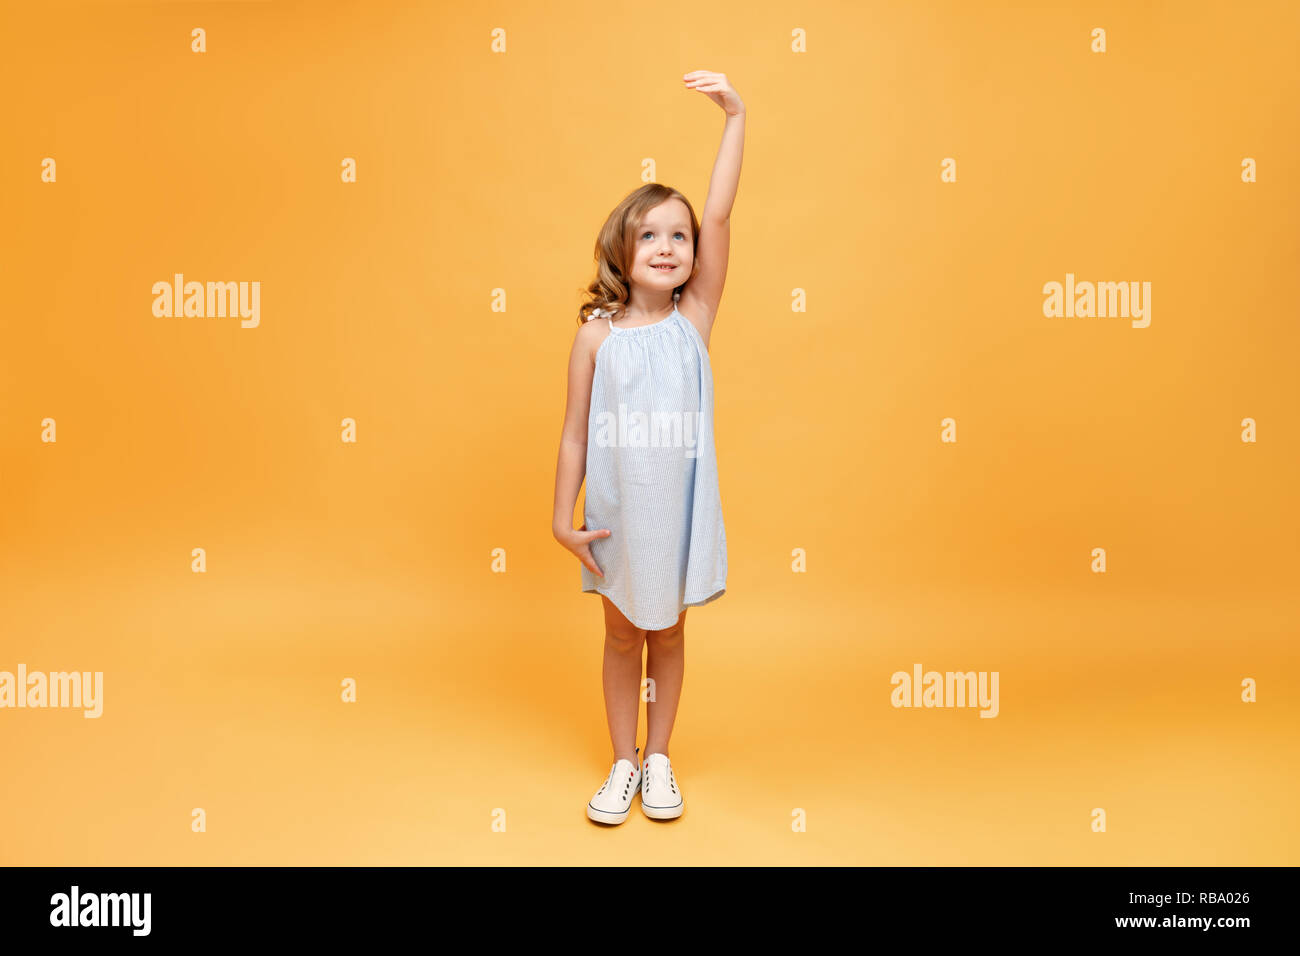 Ein kleines Kind Maßnahmen ihre Höhe auf einem gelben Hintergrund. Konzept der Entwicklung, Ziel, Erfolg Stockfoto